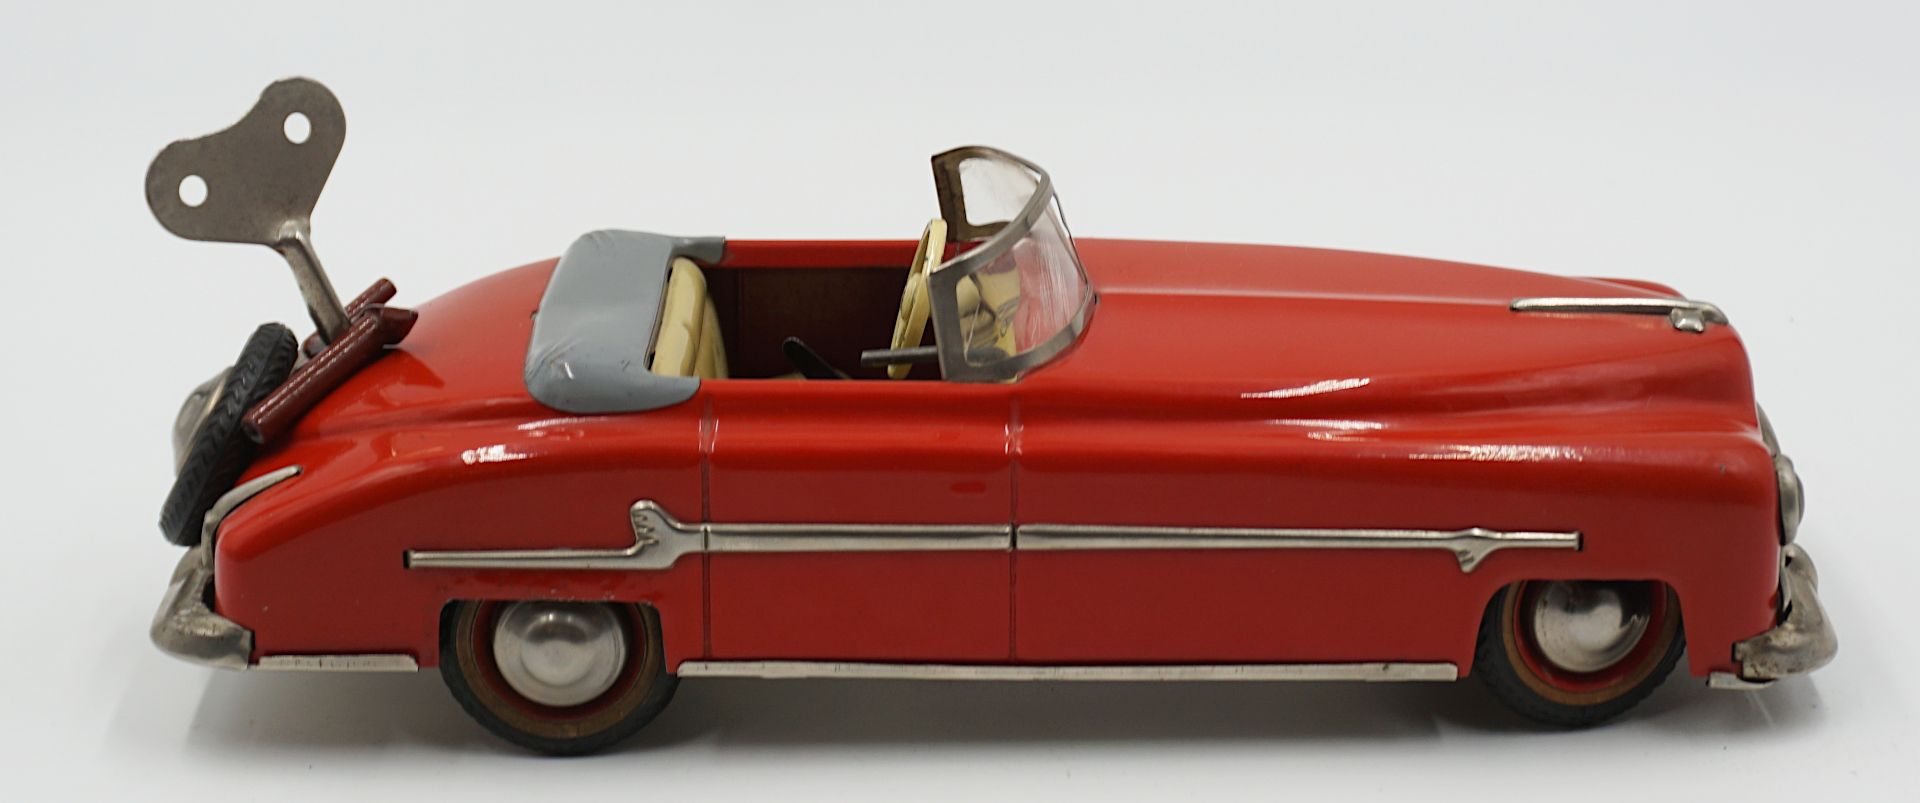 1 Aufziehauto DISTLER "Packard Cabrio" wohl 1950er Jahre, rot - Bild 3 aus 5